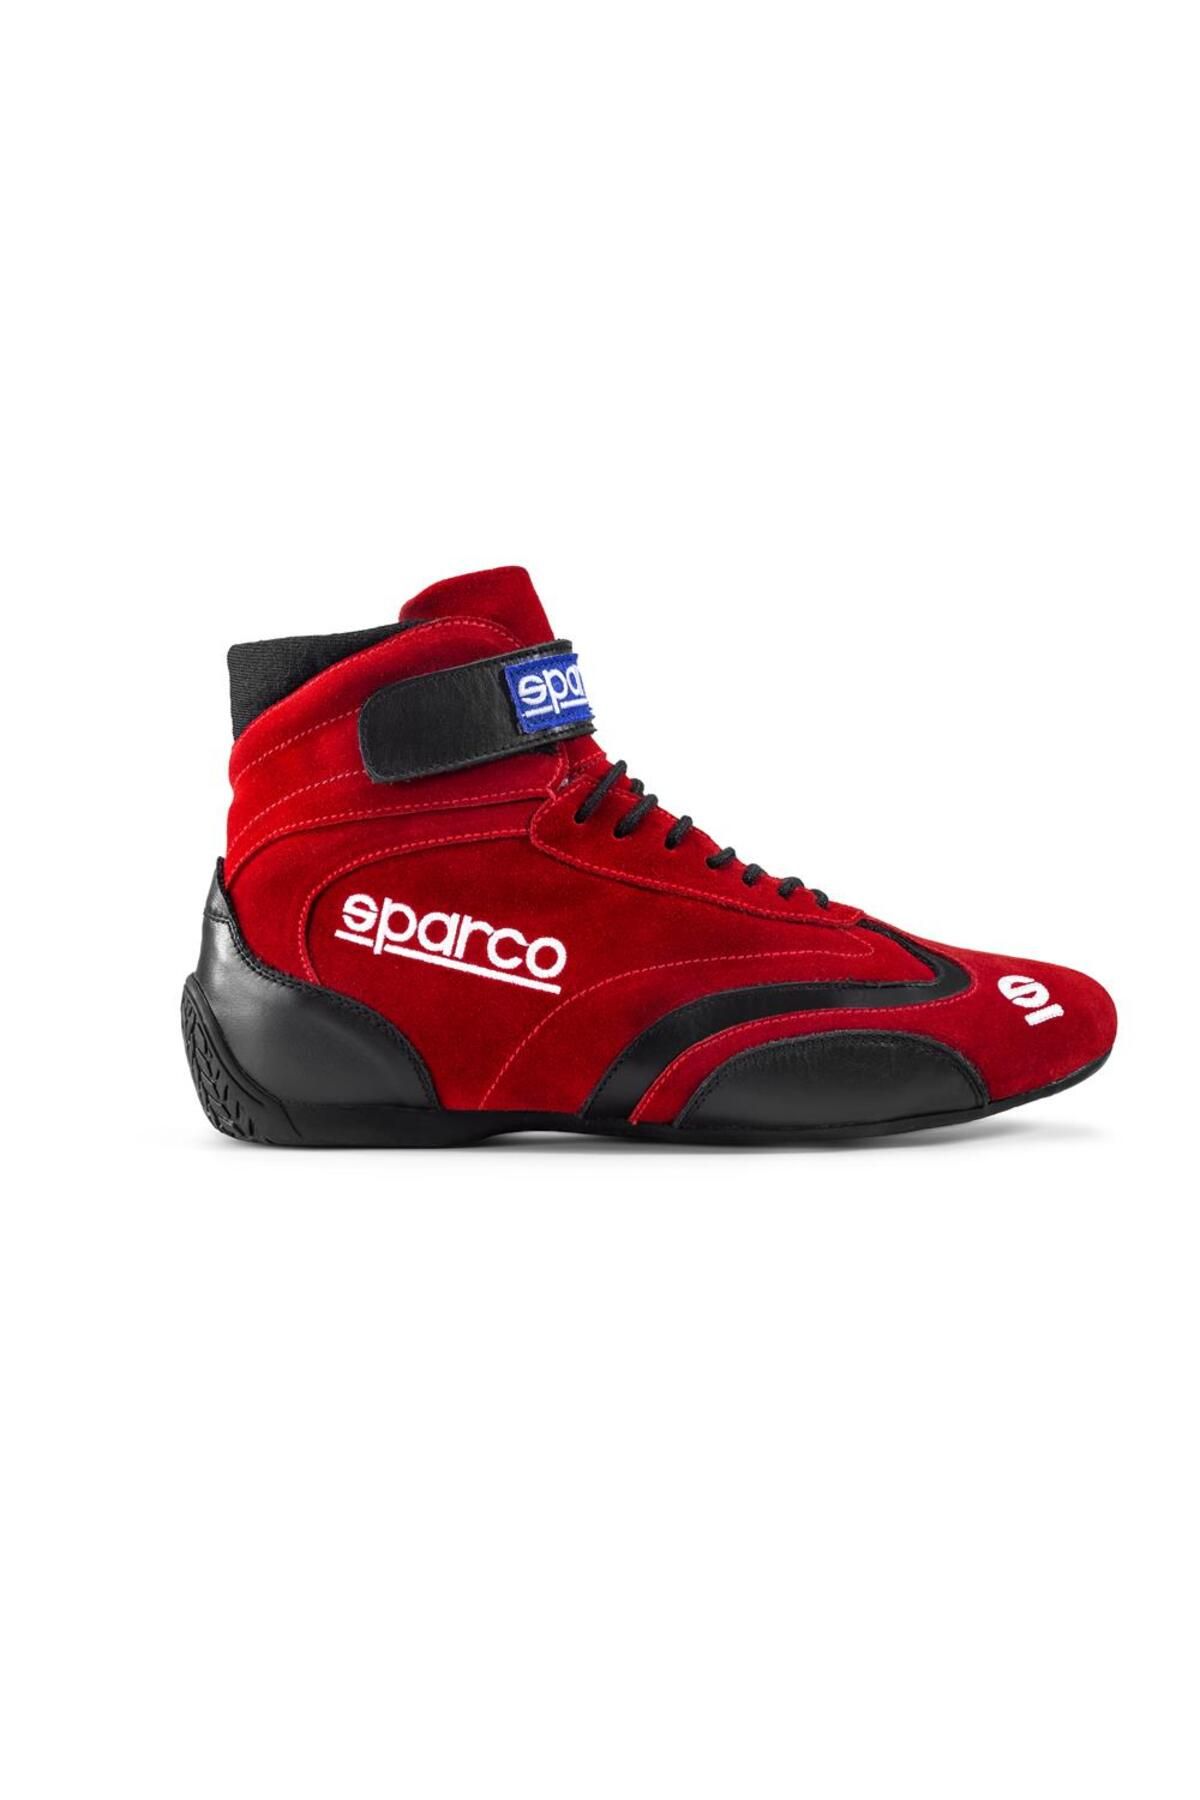 Sparco Top Yarış Ayakkabısı Fia Onaylı Kırmızı 44 Numara